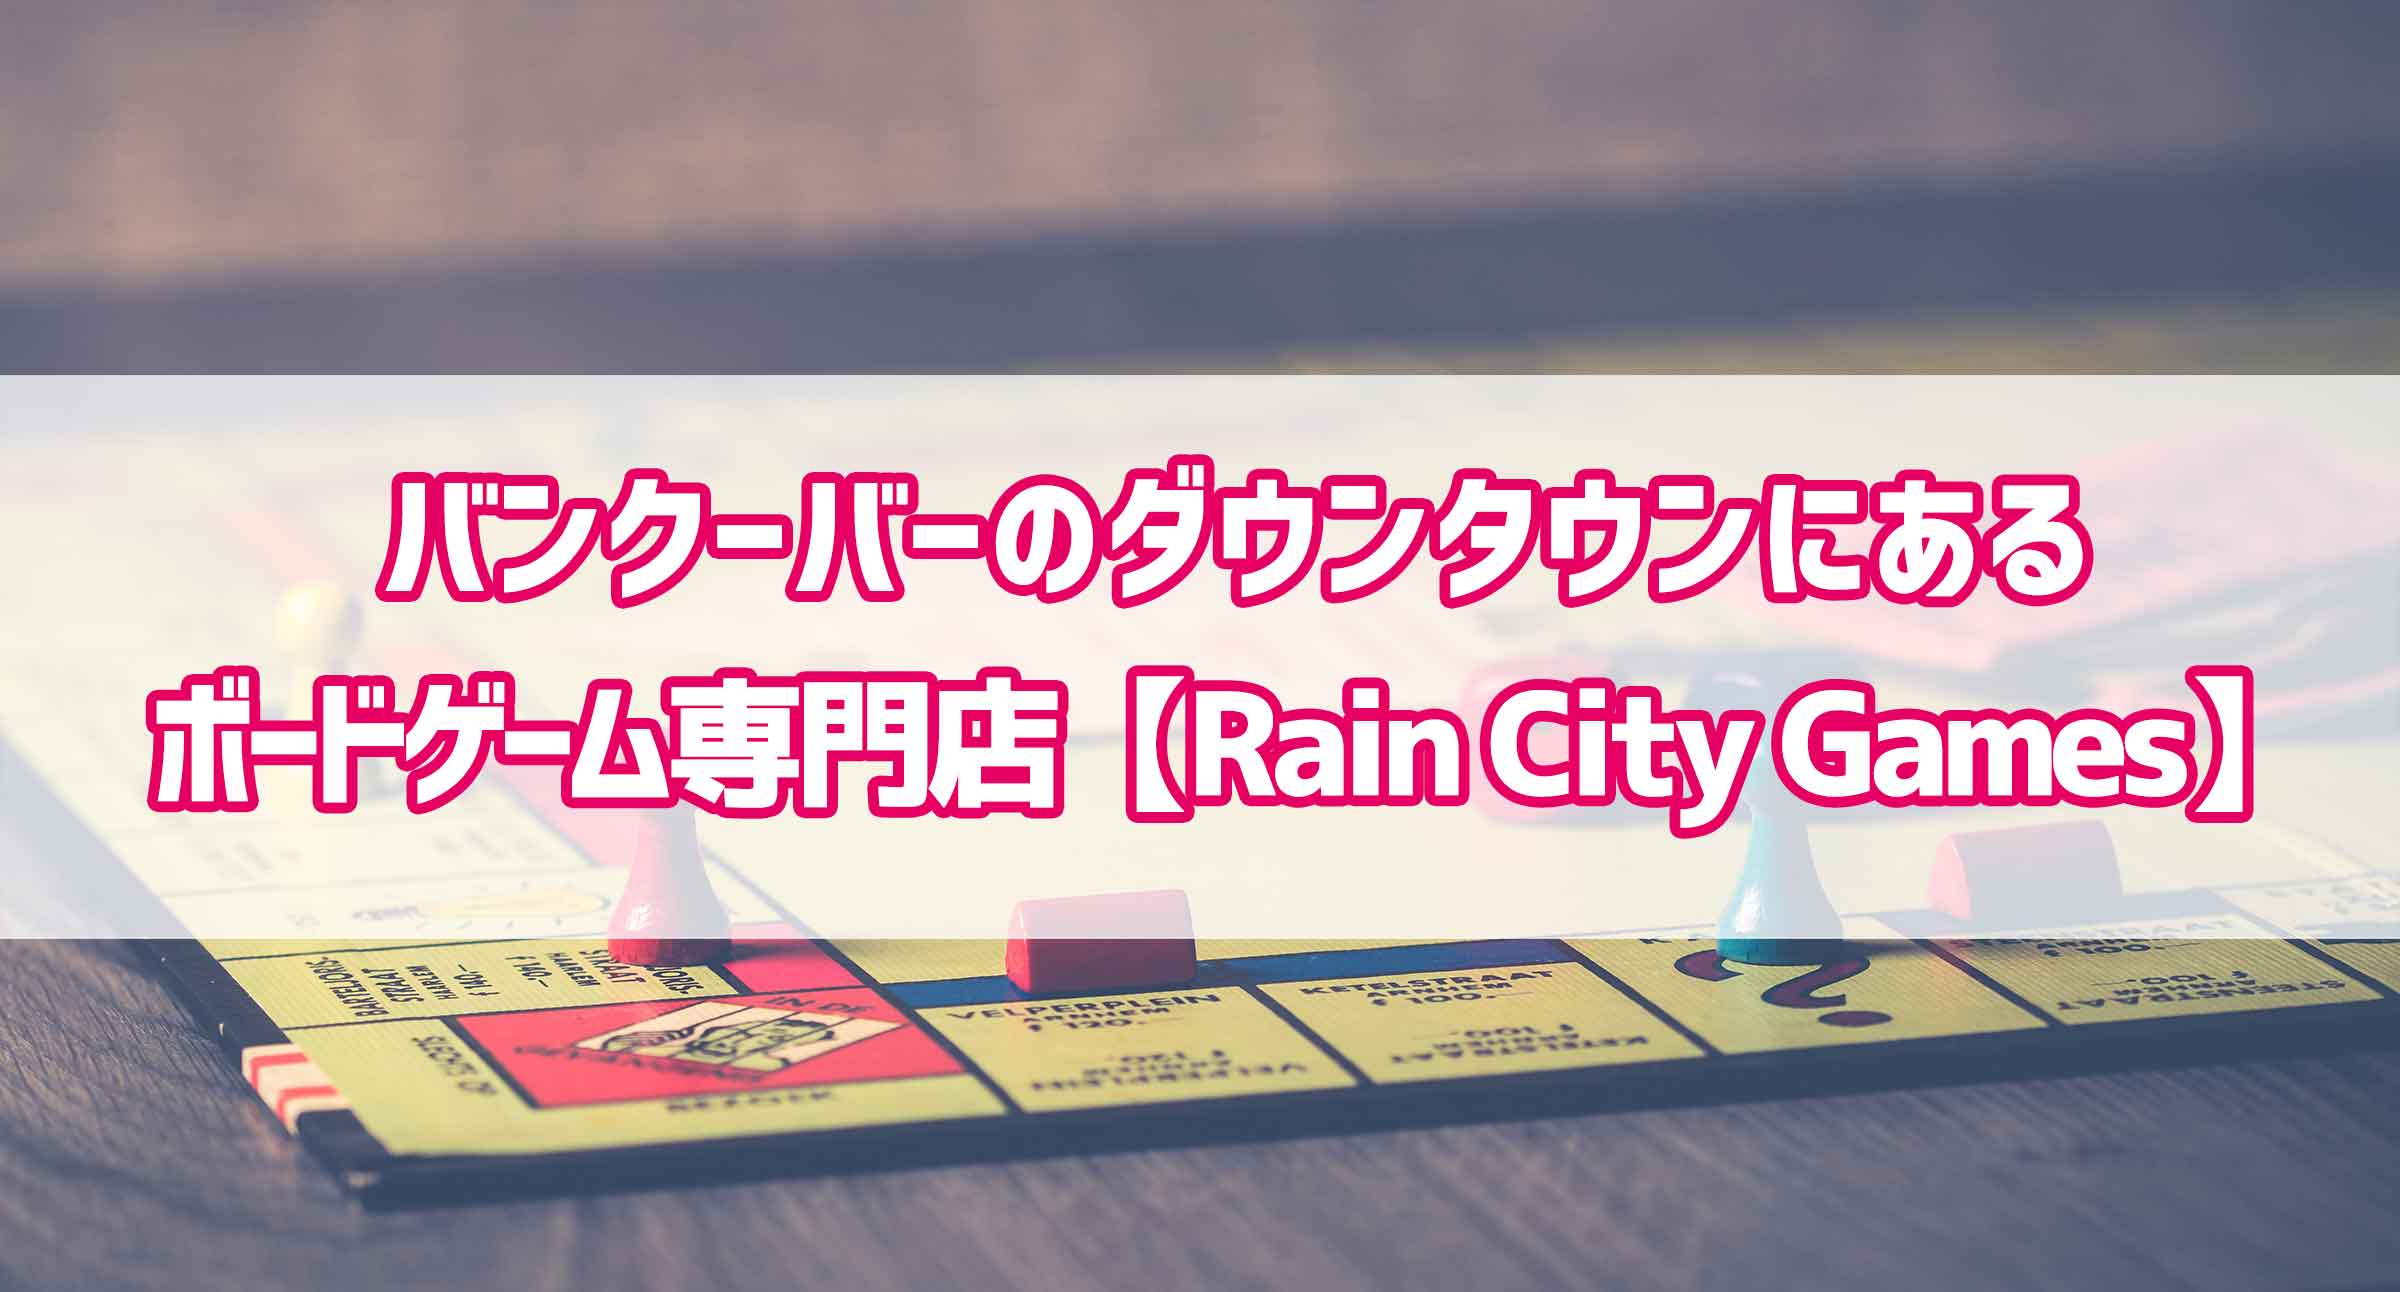 バンクーバーのダウンタウンにあるボードゲーム専門店 Rain City Games